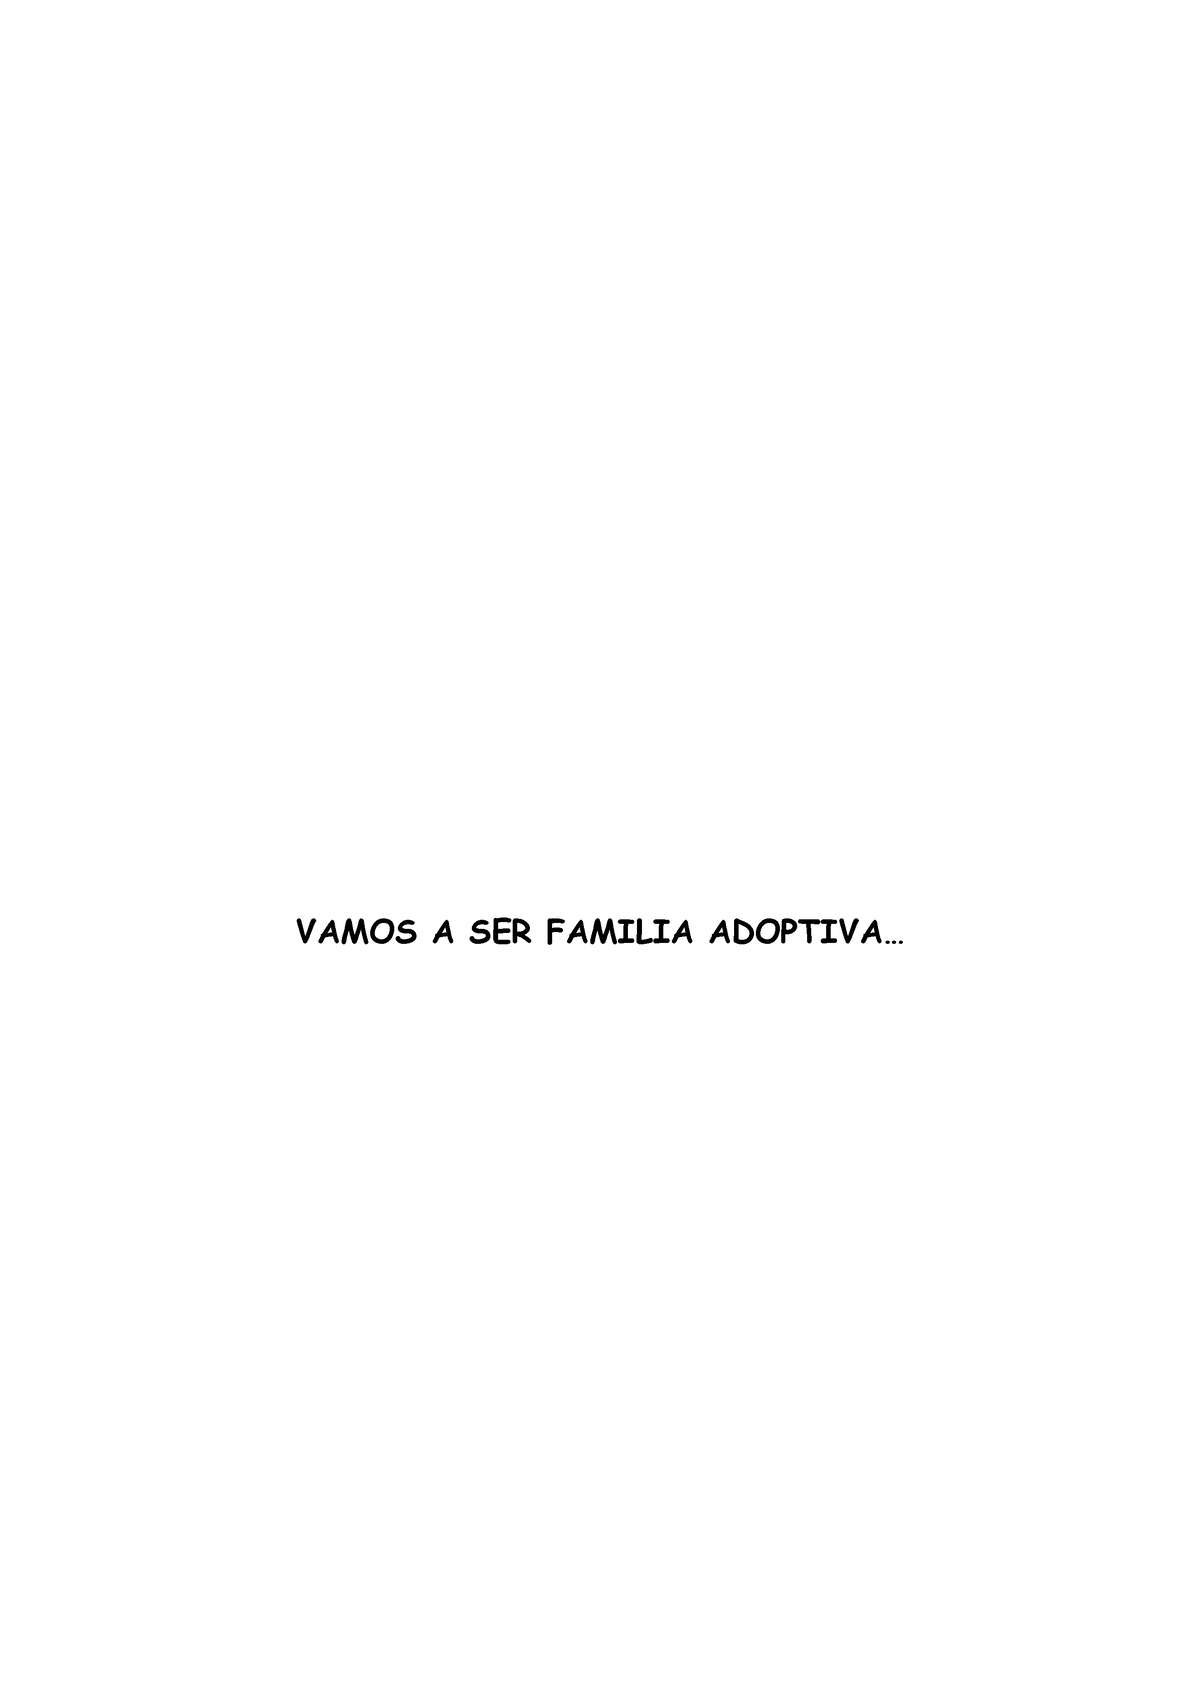 Guía Para Cuando Vamos A Ser Una Familia Adoptiva Vamos A Ser Familia Adoptiva 3025